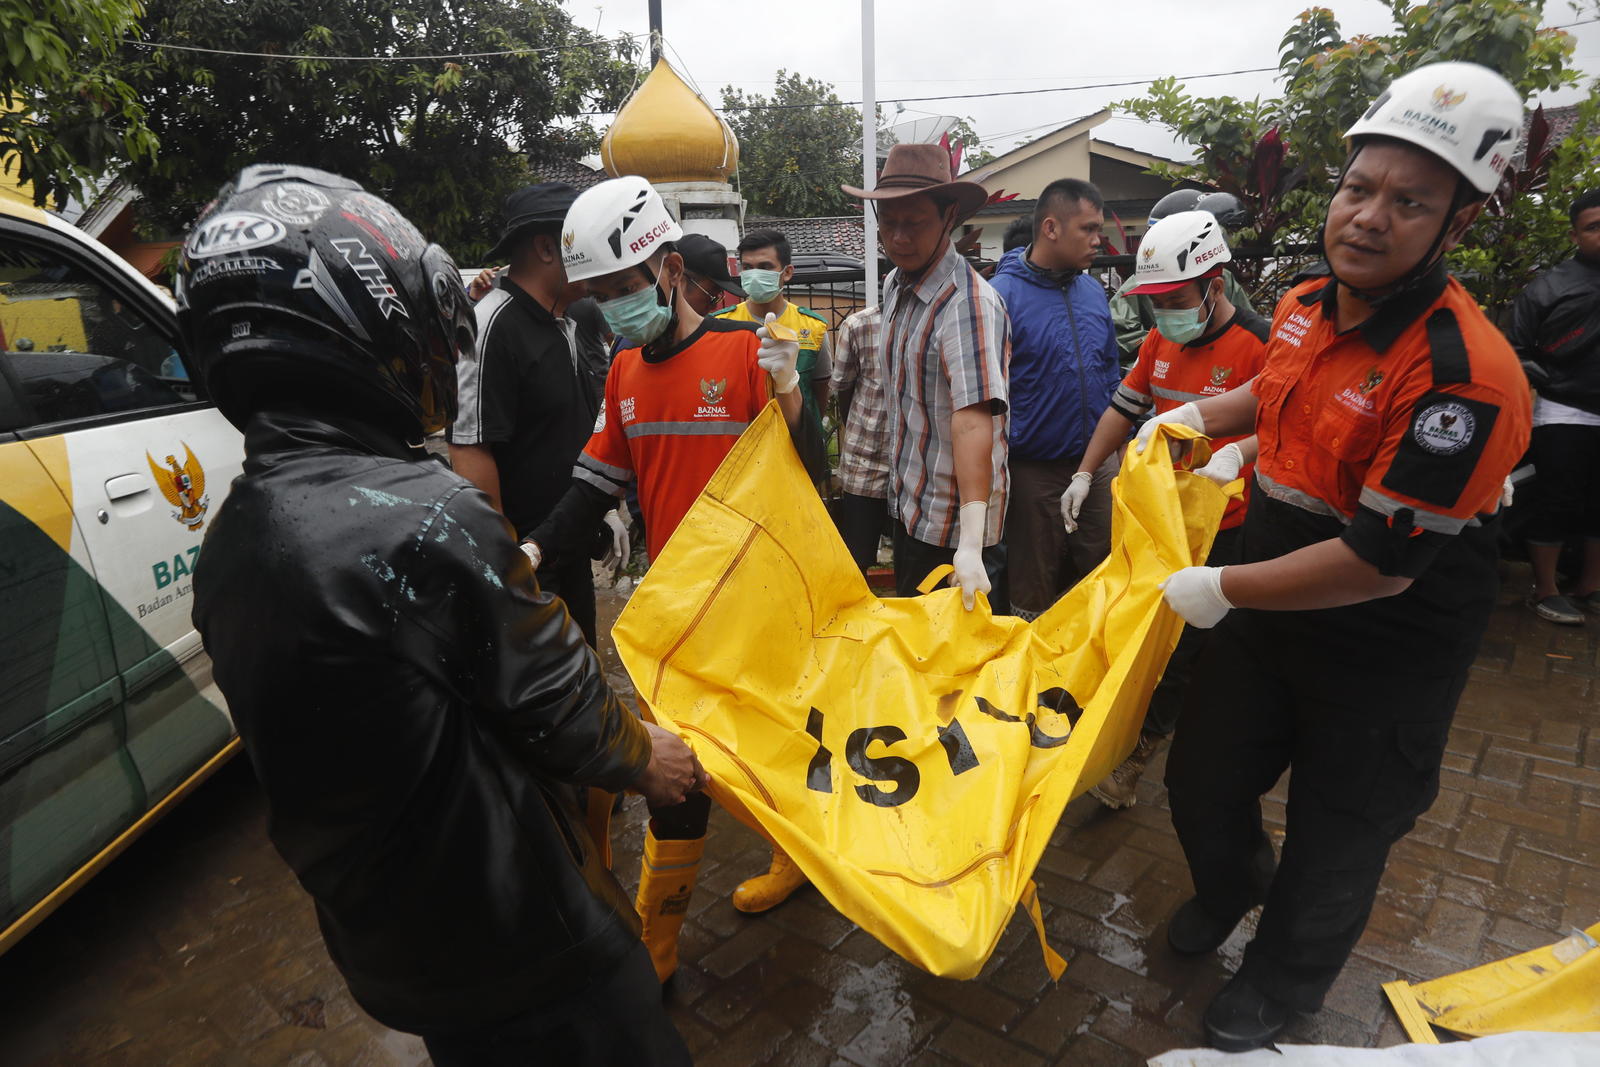 Recuperan a víctimas. De momento, todas las víctimas mortales son indonesios, aunque el número de fallecidos puede aumentar en las próximas horas conforme avanzan los equipos de rescate. (EFE)